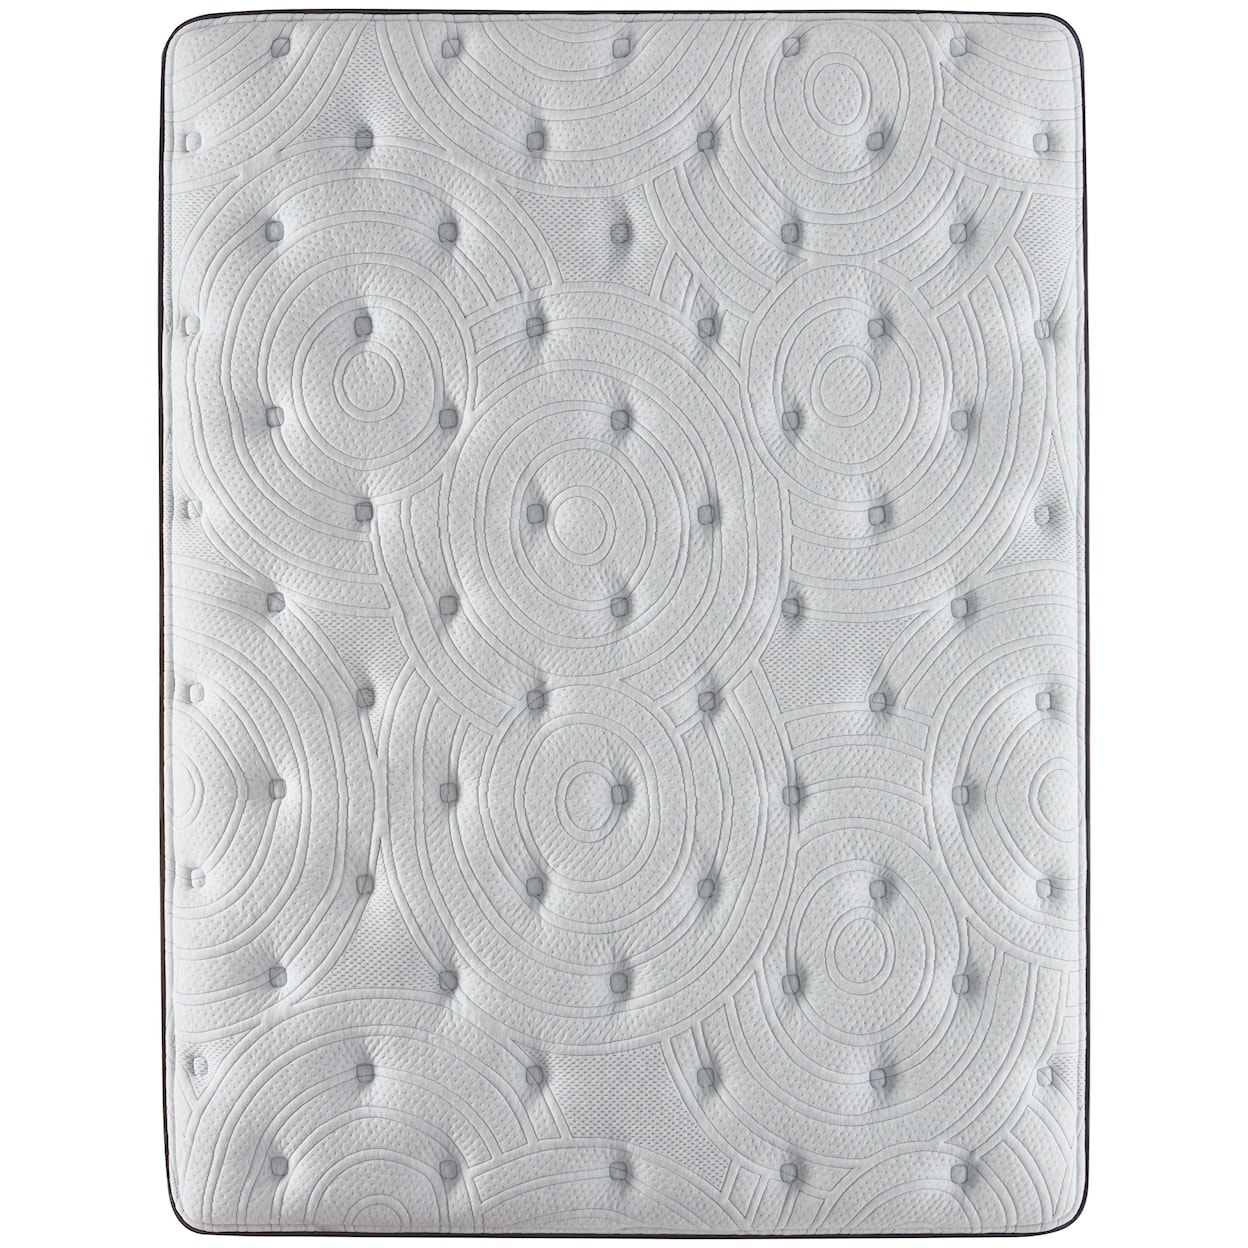 Serta Renewed Sleep Plush PT Full 17" Plush Pillow Top Low Profile Set